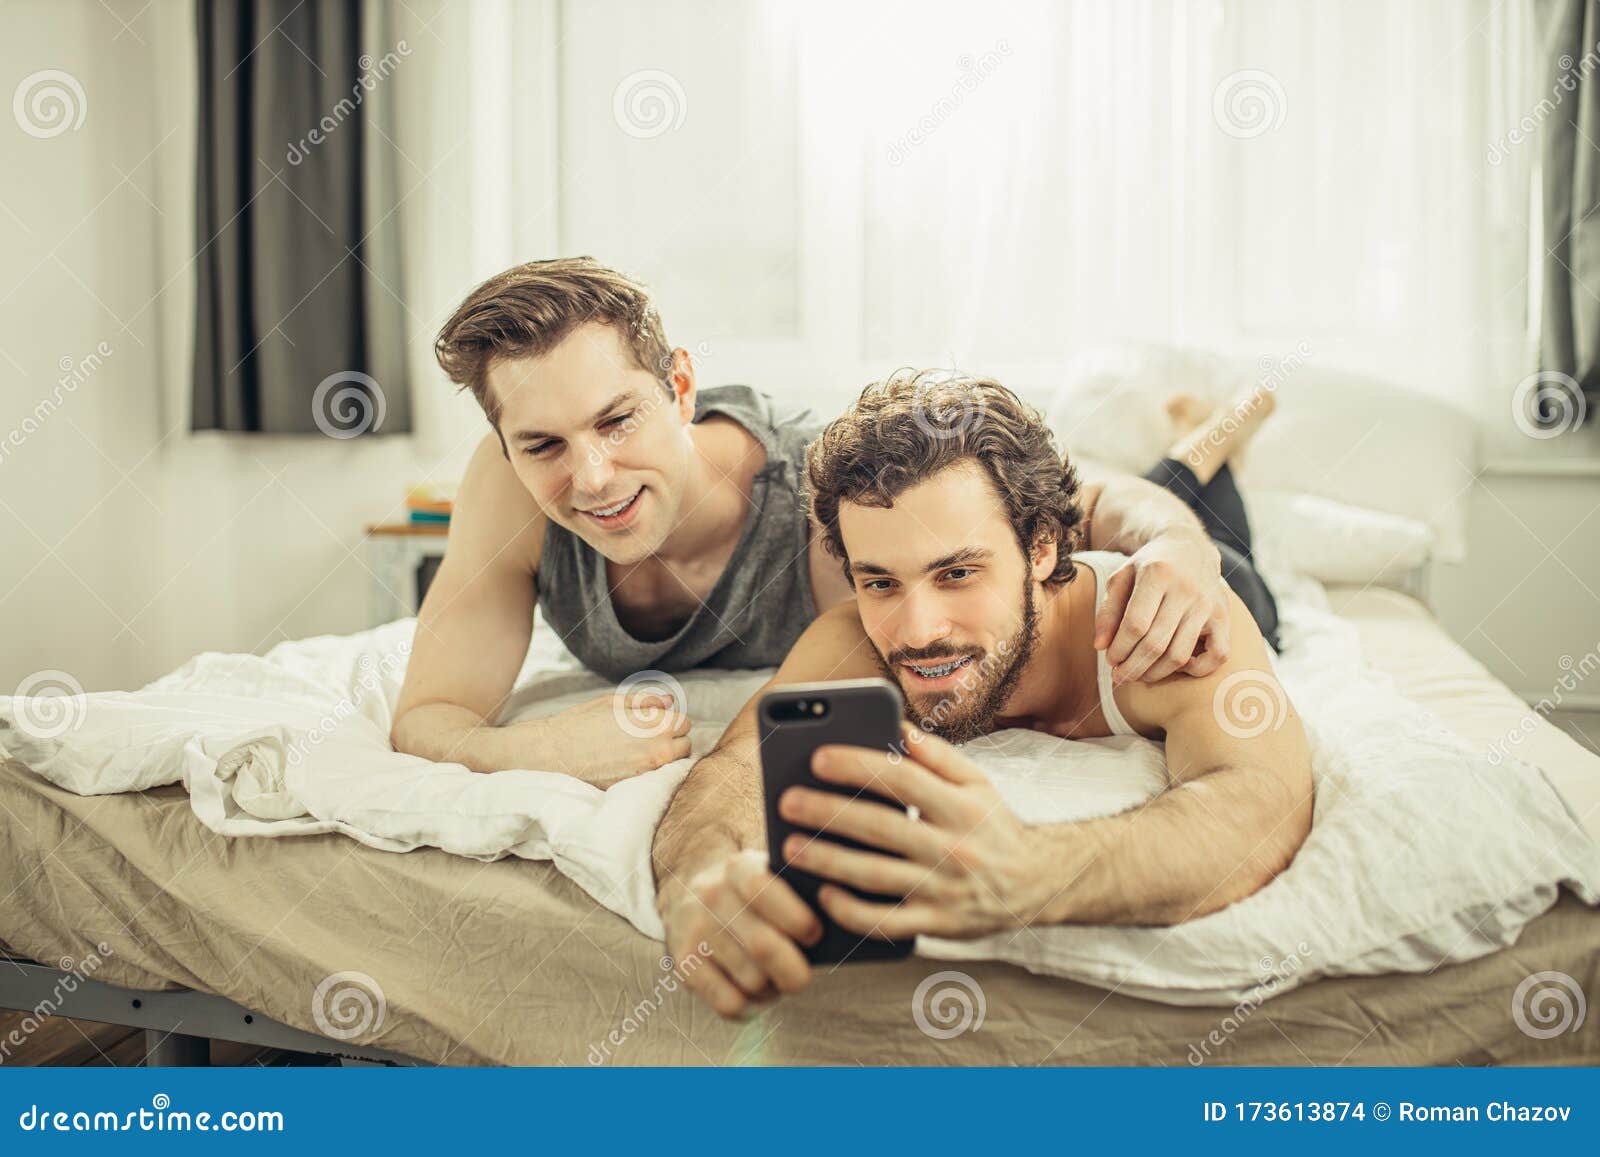 Gay sex in bed